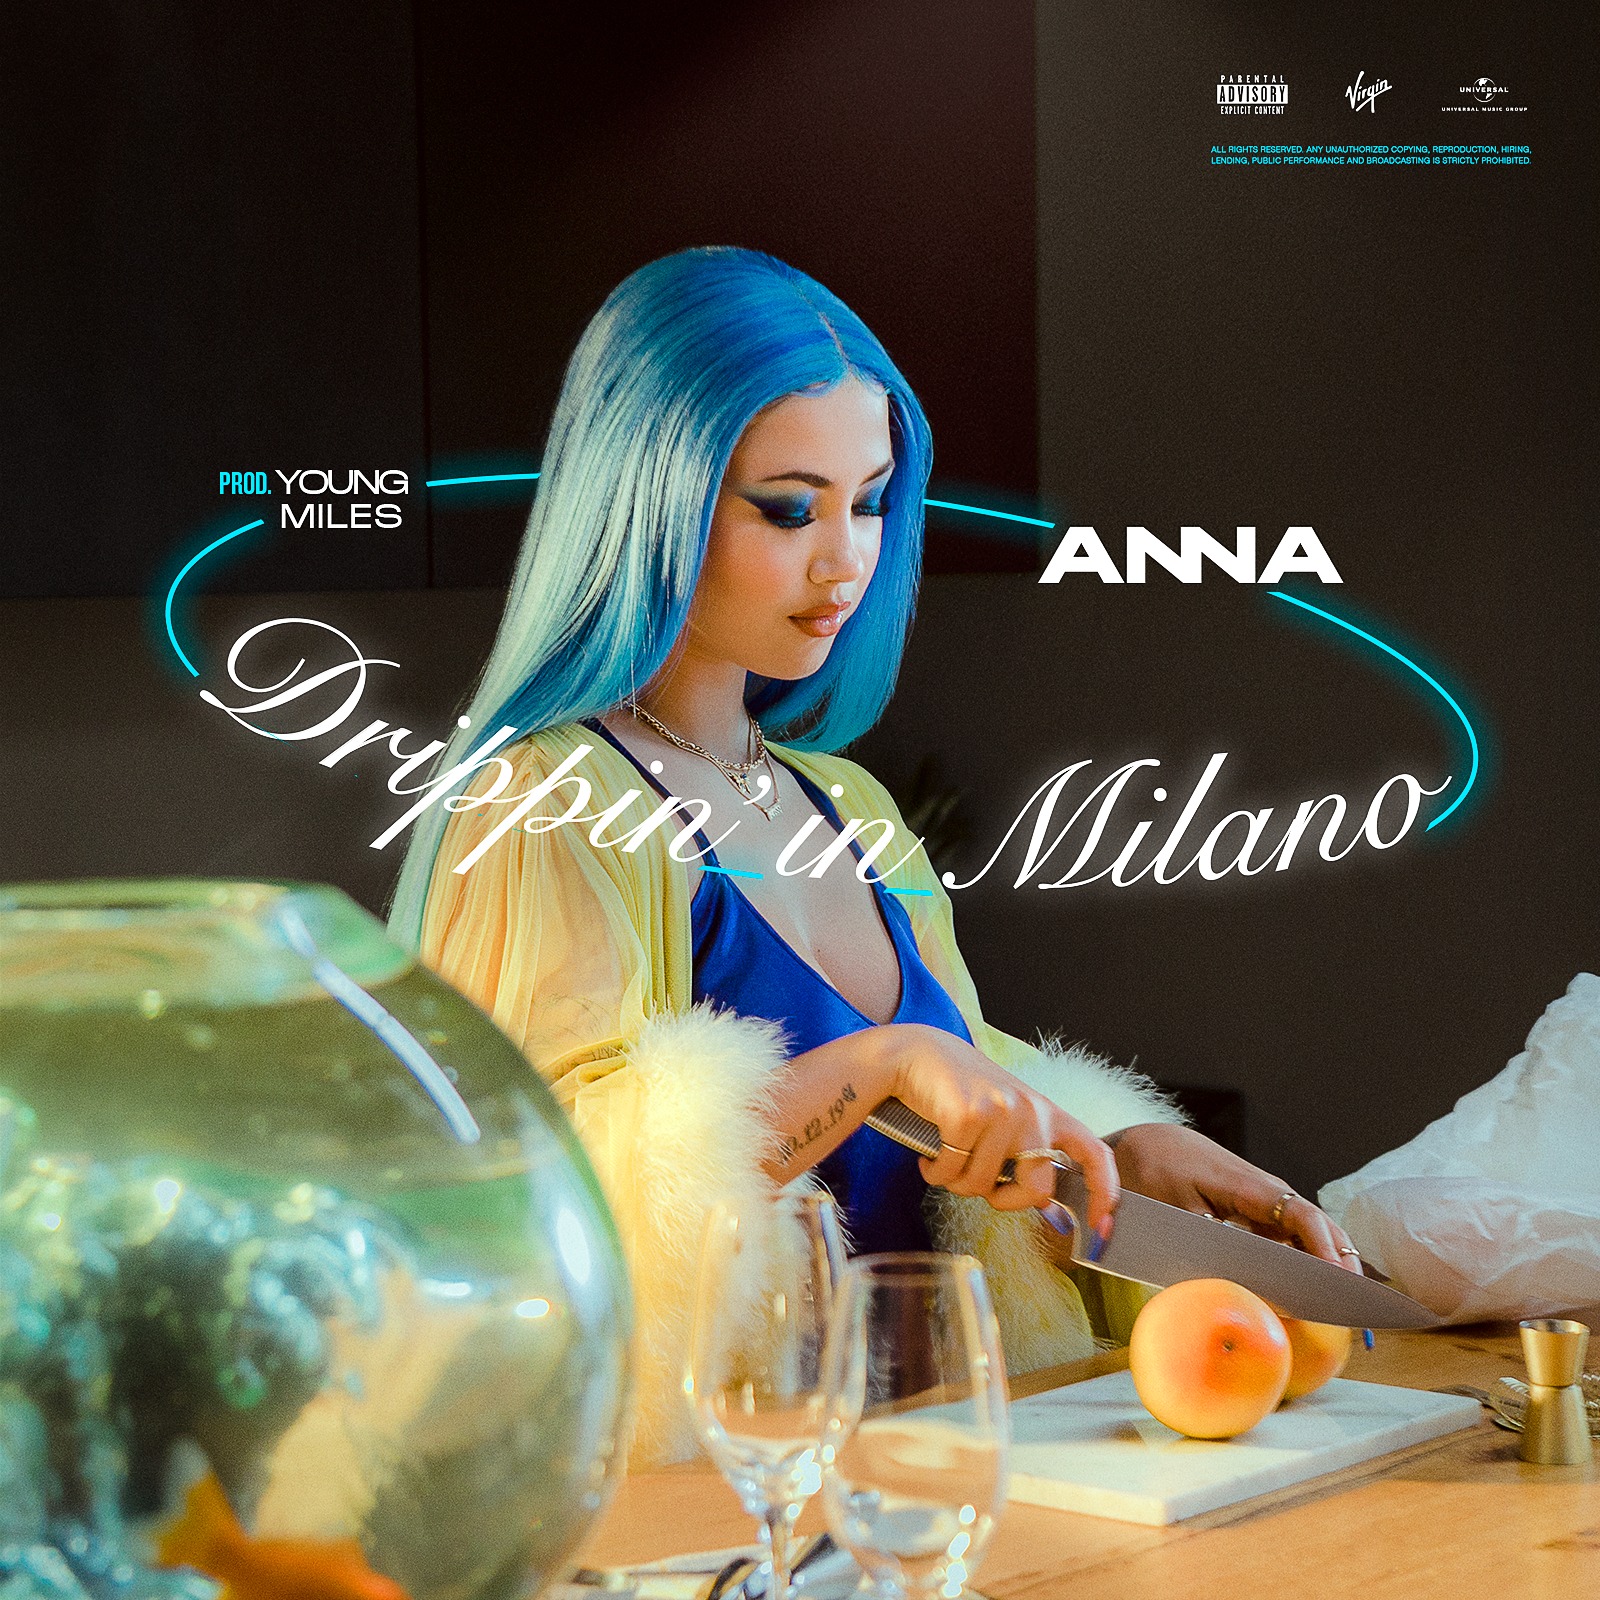 anna-album-e-tour---immagini-Anna_Cover_singolo_Drippin_in_Milano.jpeg